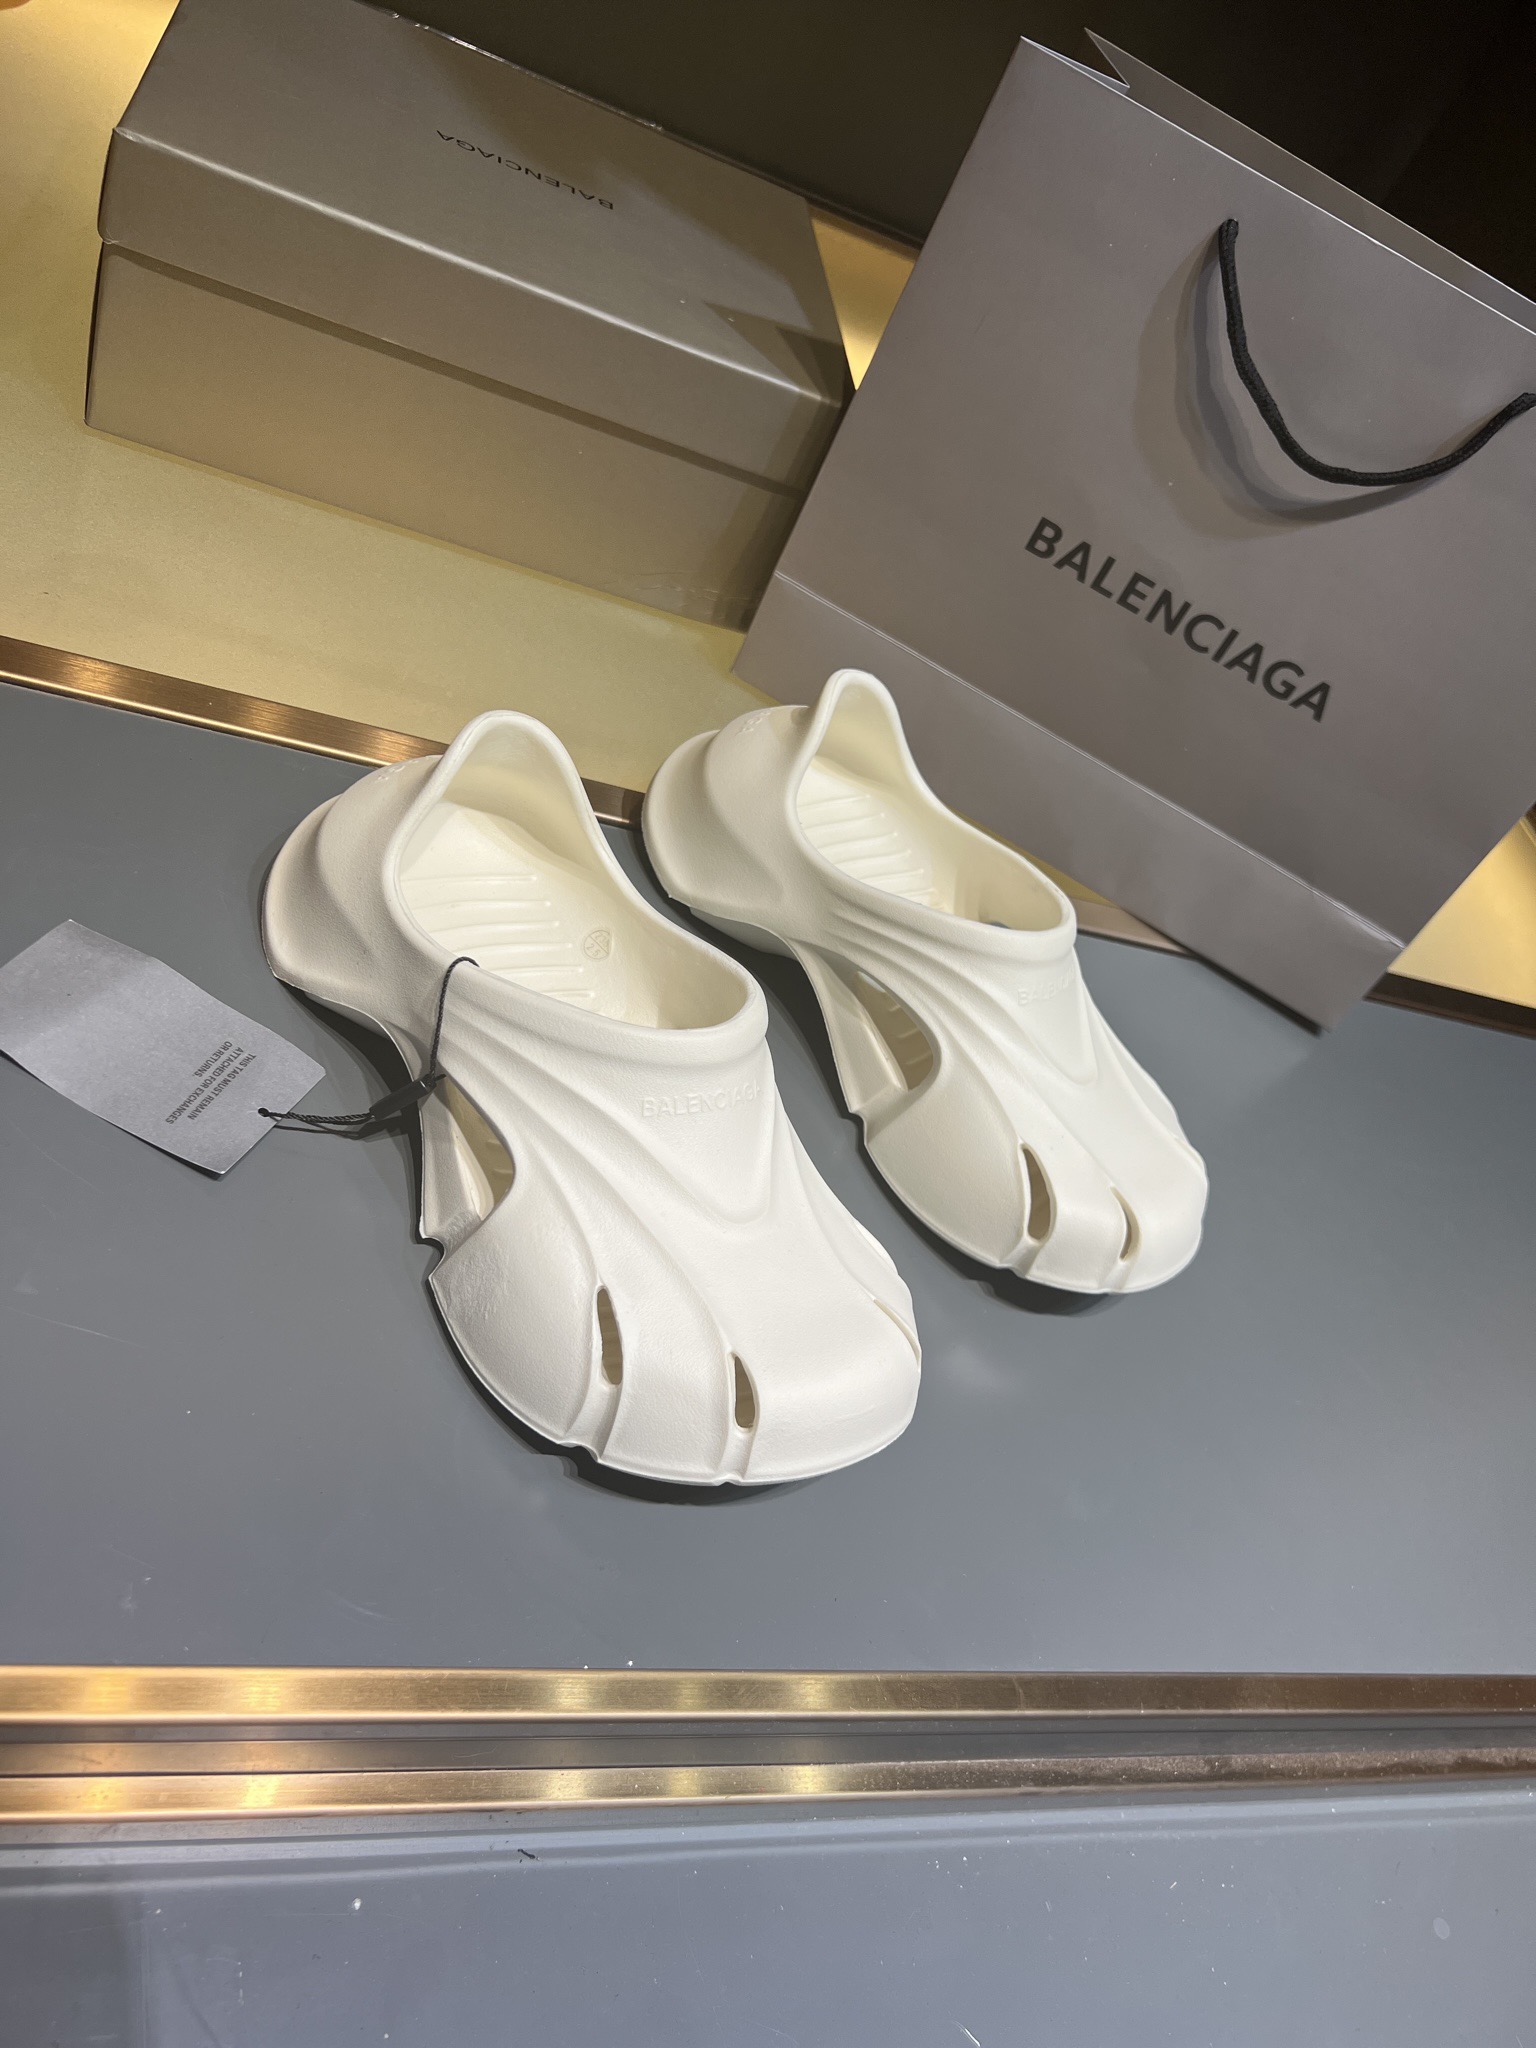 Balenciaga Men's and women's non-slip rubber sole shoes